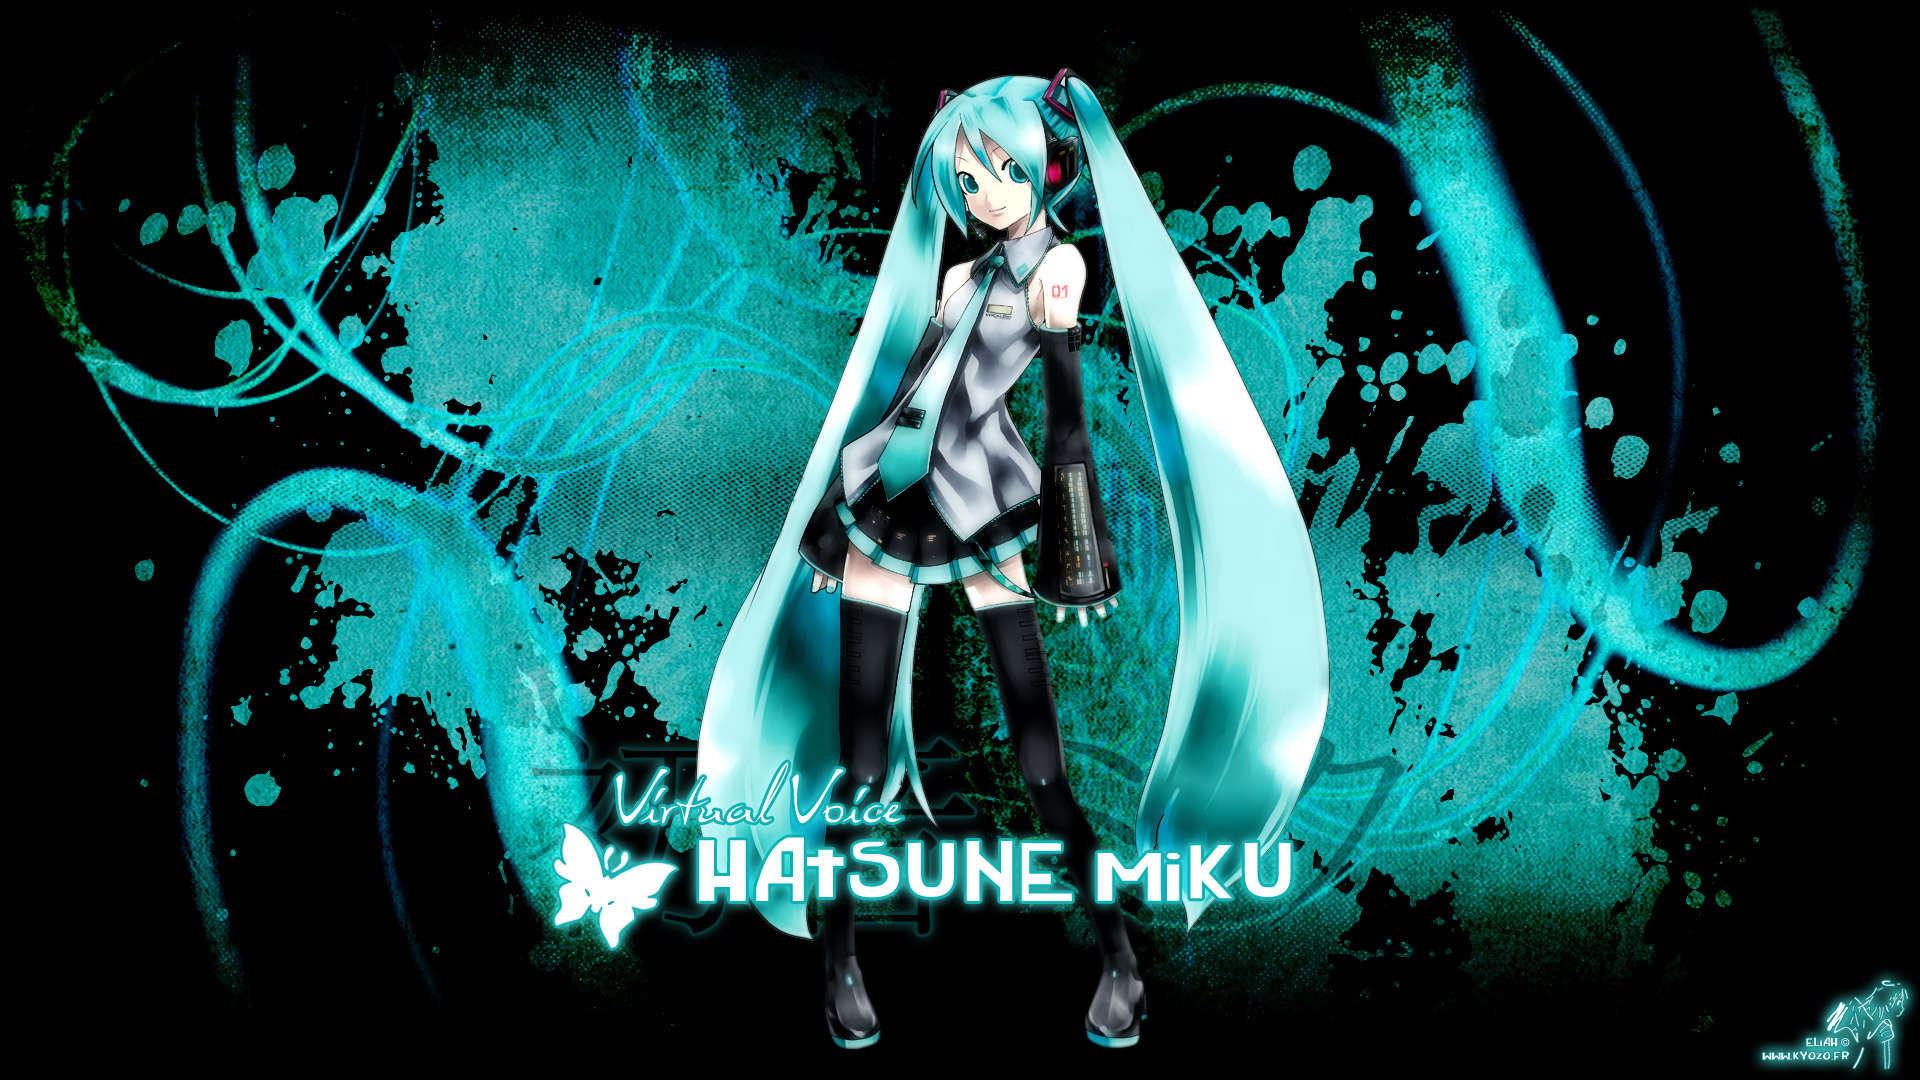 hatsune miku fondo de pantalla,cg artwork,fuente,diseño gráfico,oscuridad,gráficos